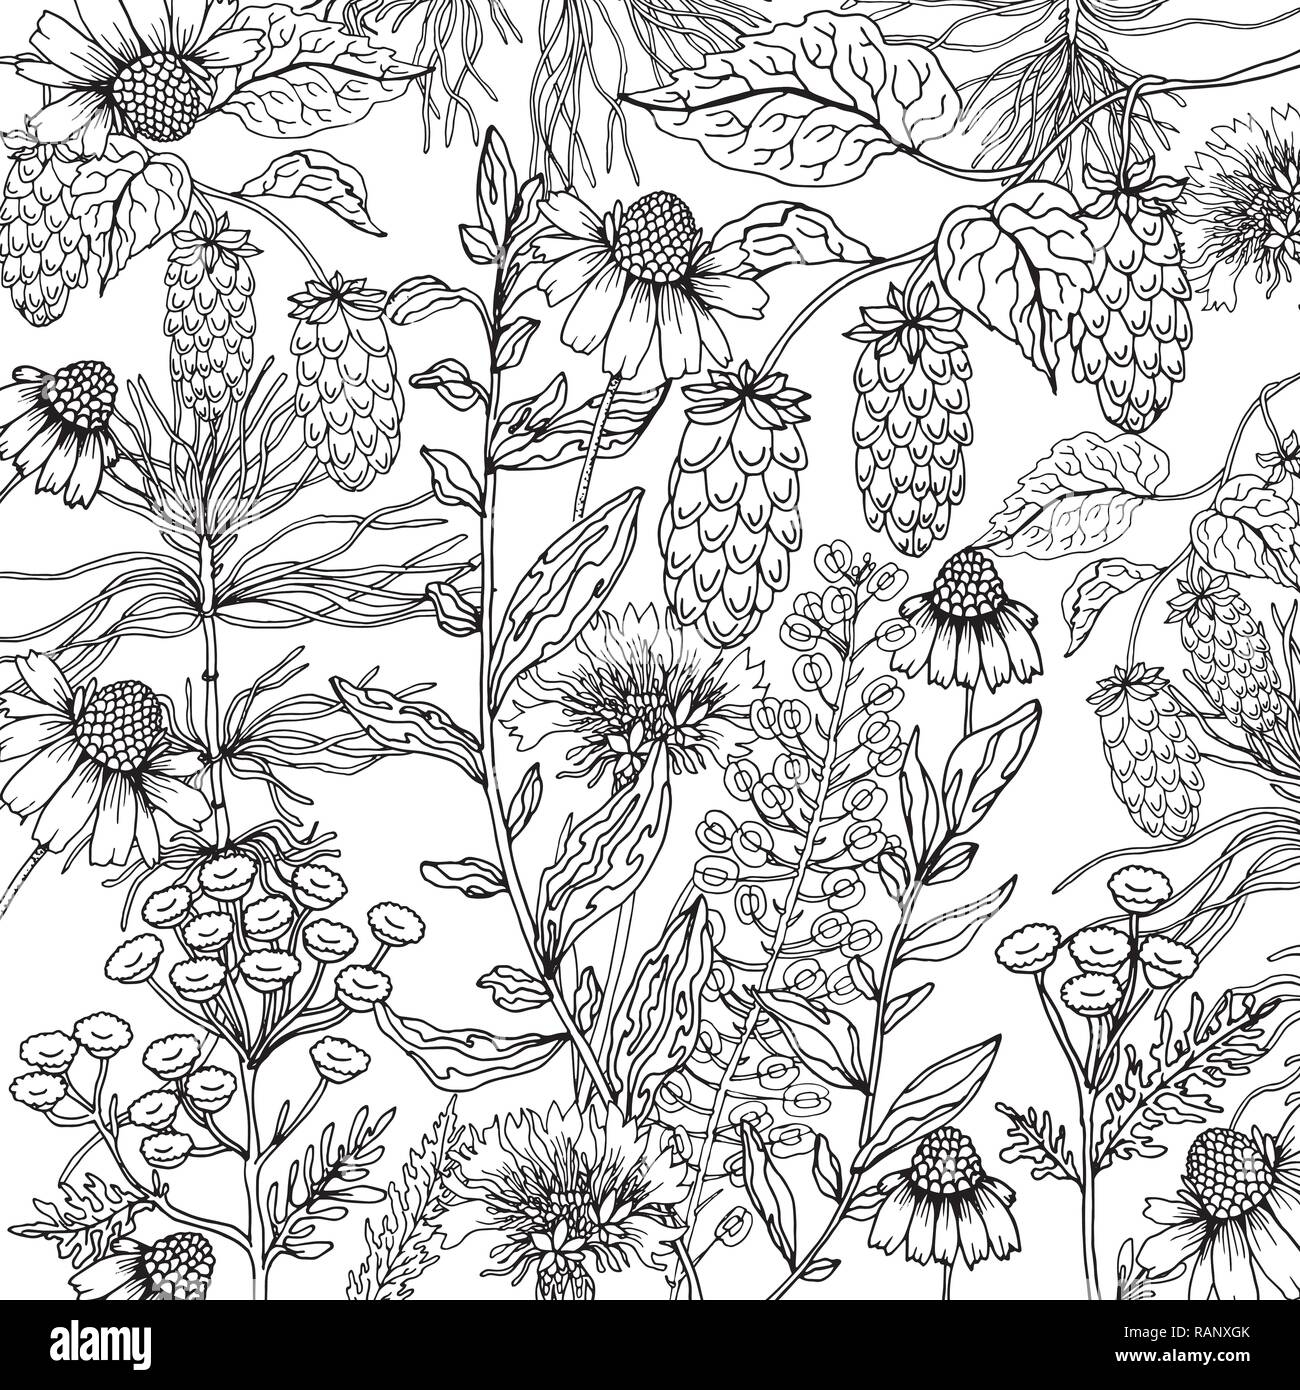 Camomille fleurs doodle en arrière-plan avec vecteur doodles coloriage noir et blanc Illustration de Vecteur